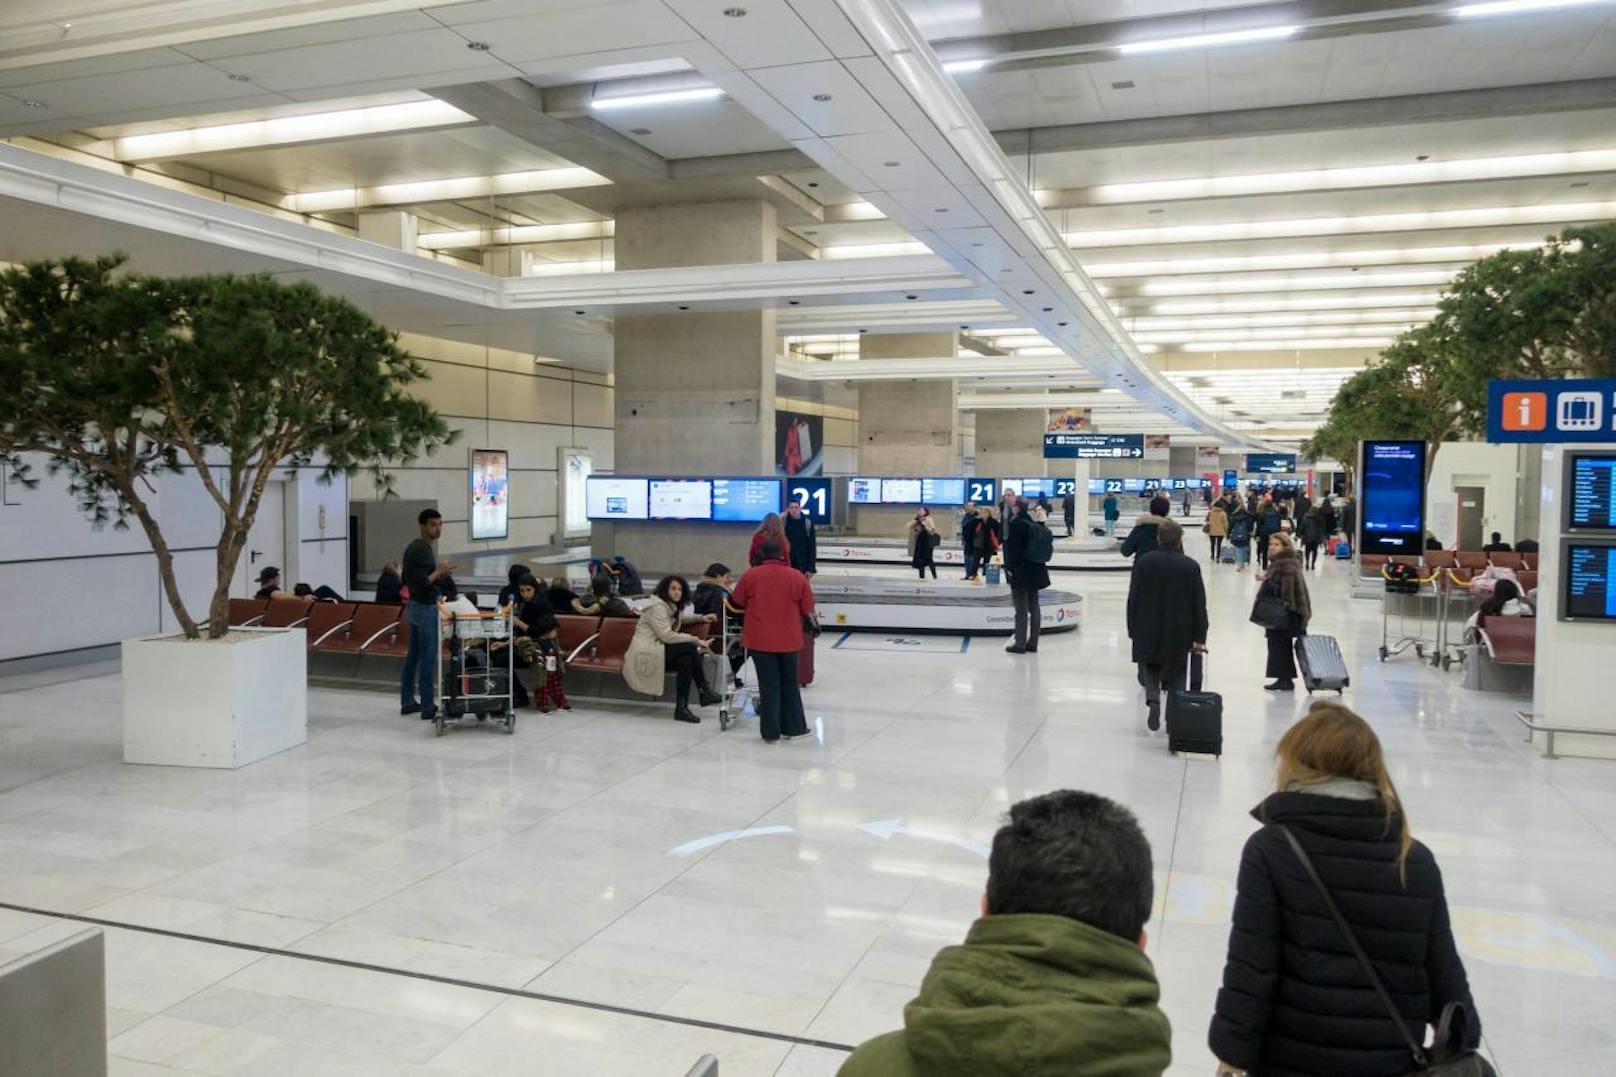 Die meistfrequentierten Flughäfen der Welt laut Airports Council International (ACI) im Jahr 2017. Platz 10: Paris Charles de Gaulle, Frankreich: 69.471.000 Passagiere.